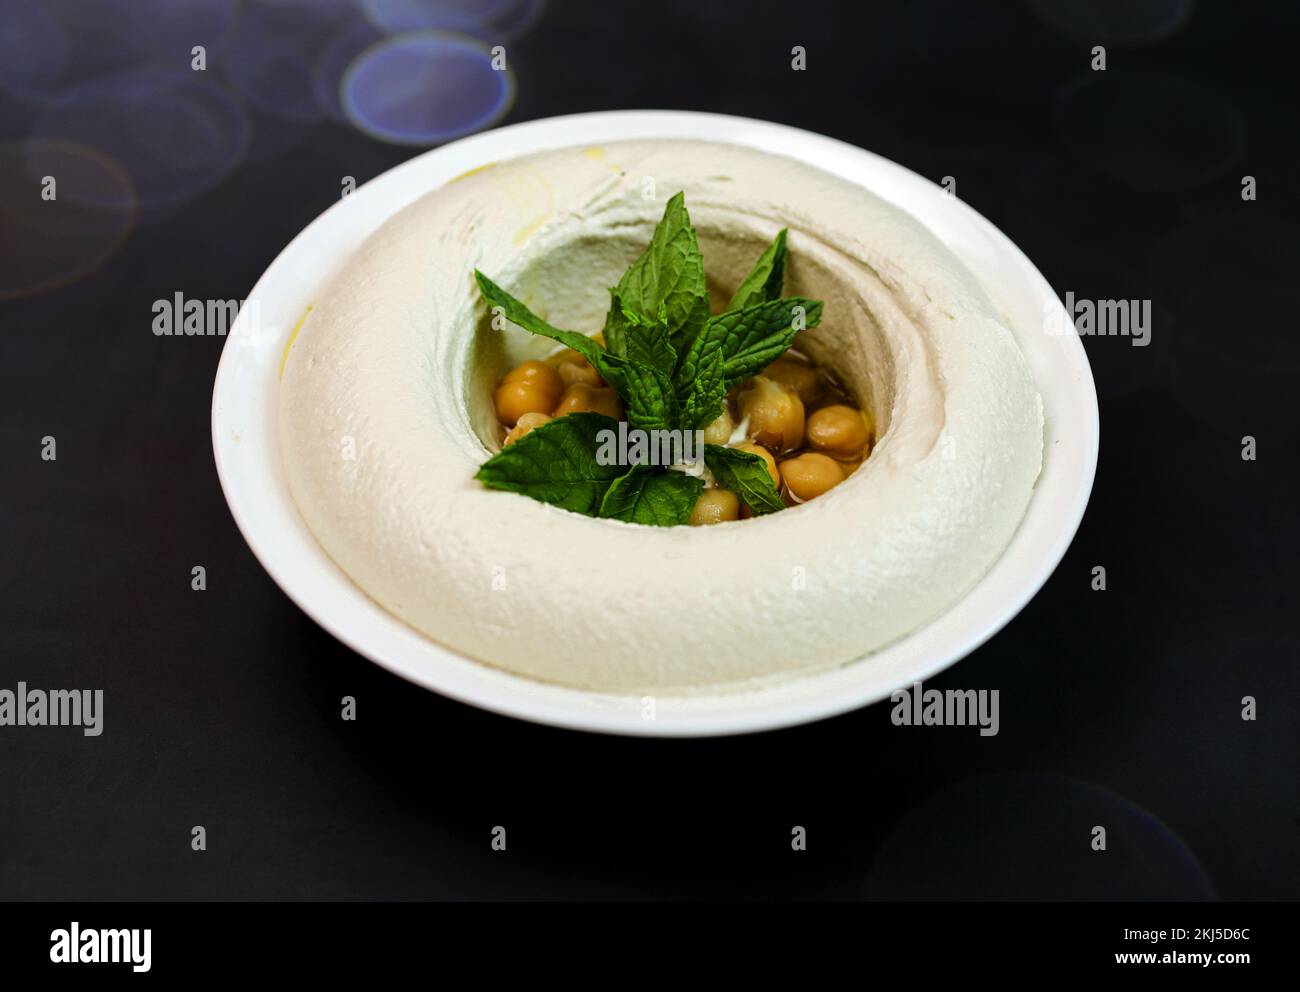 Photos de haute qualité de la cuisine arabe libanaise Banque D'Images